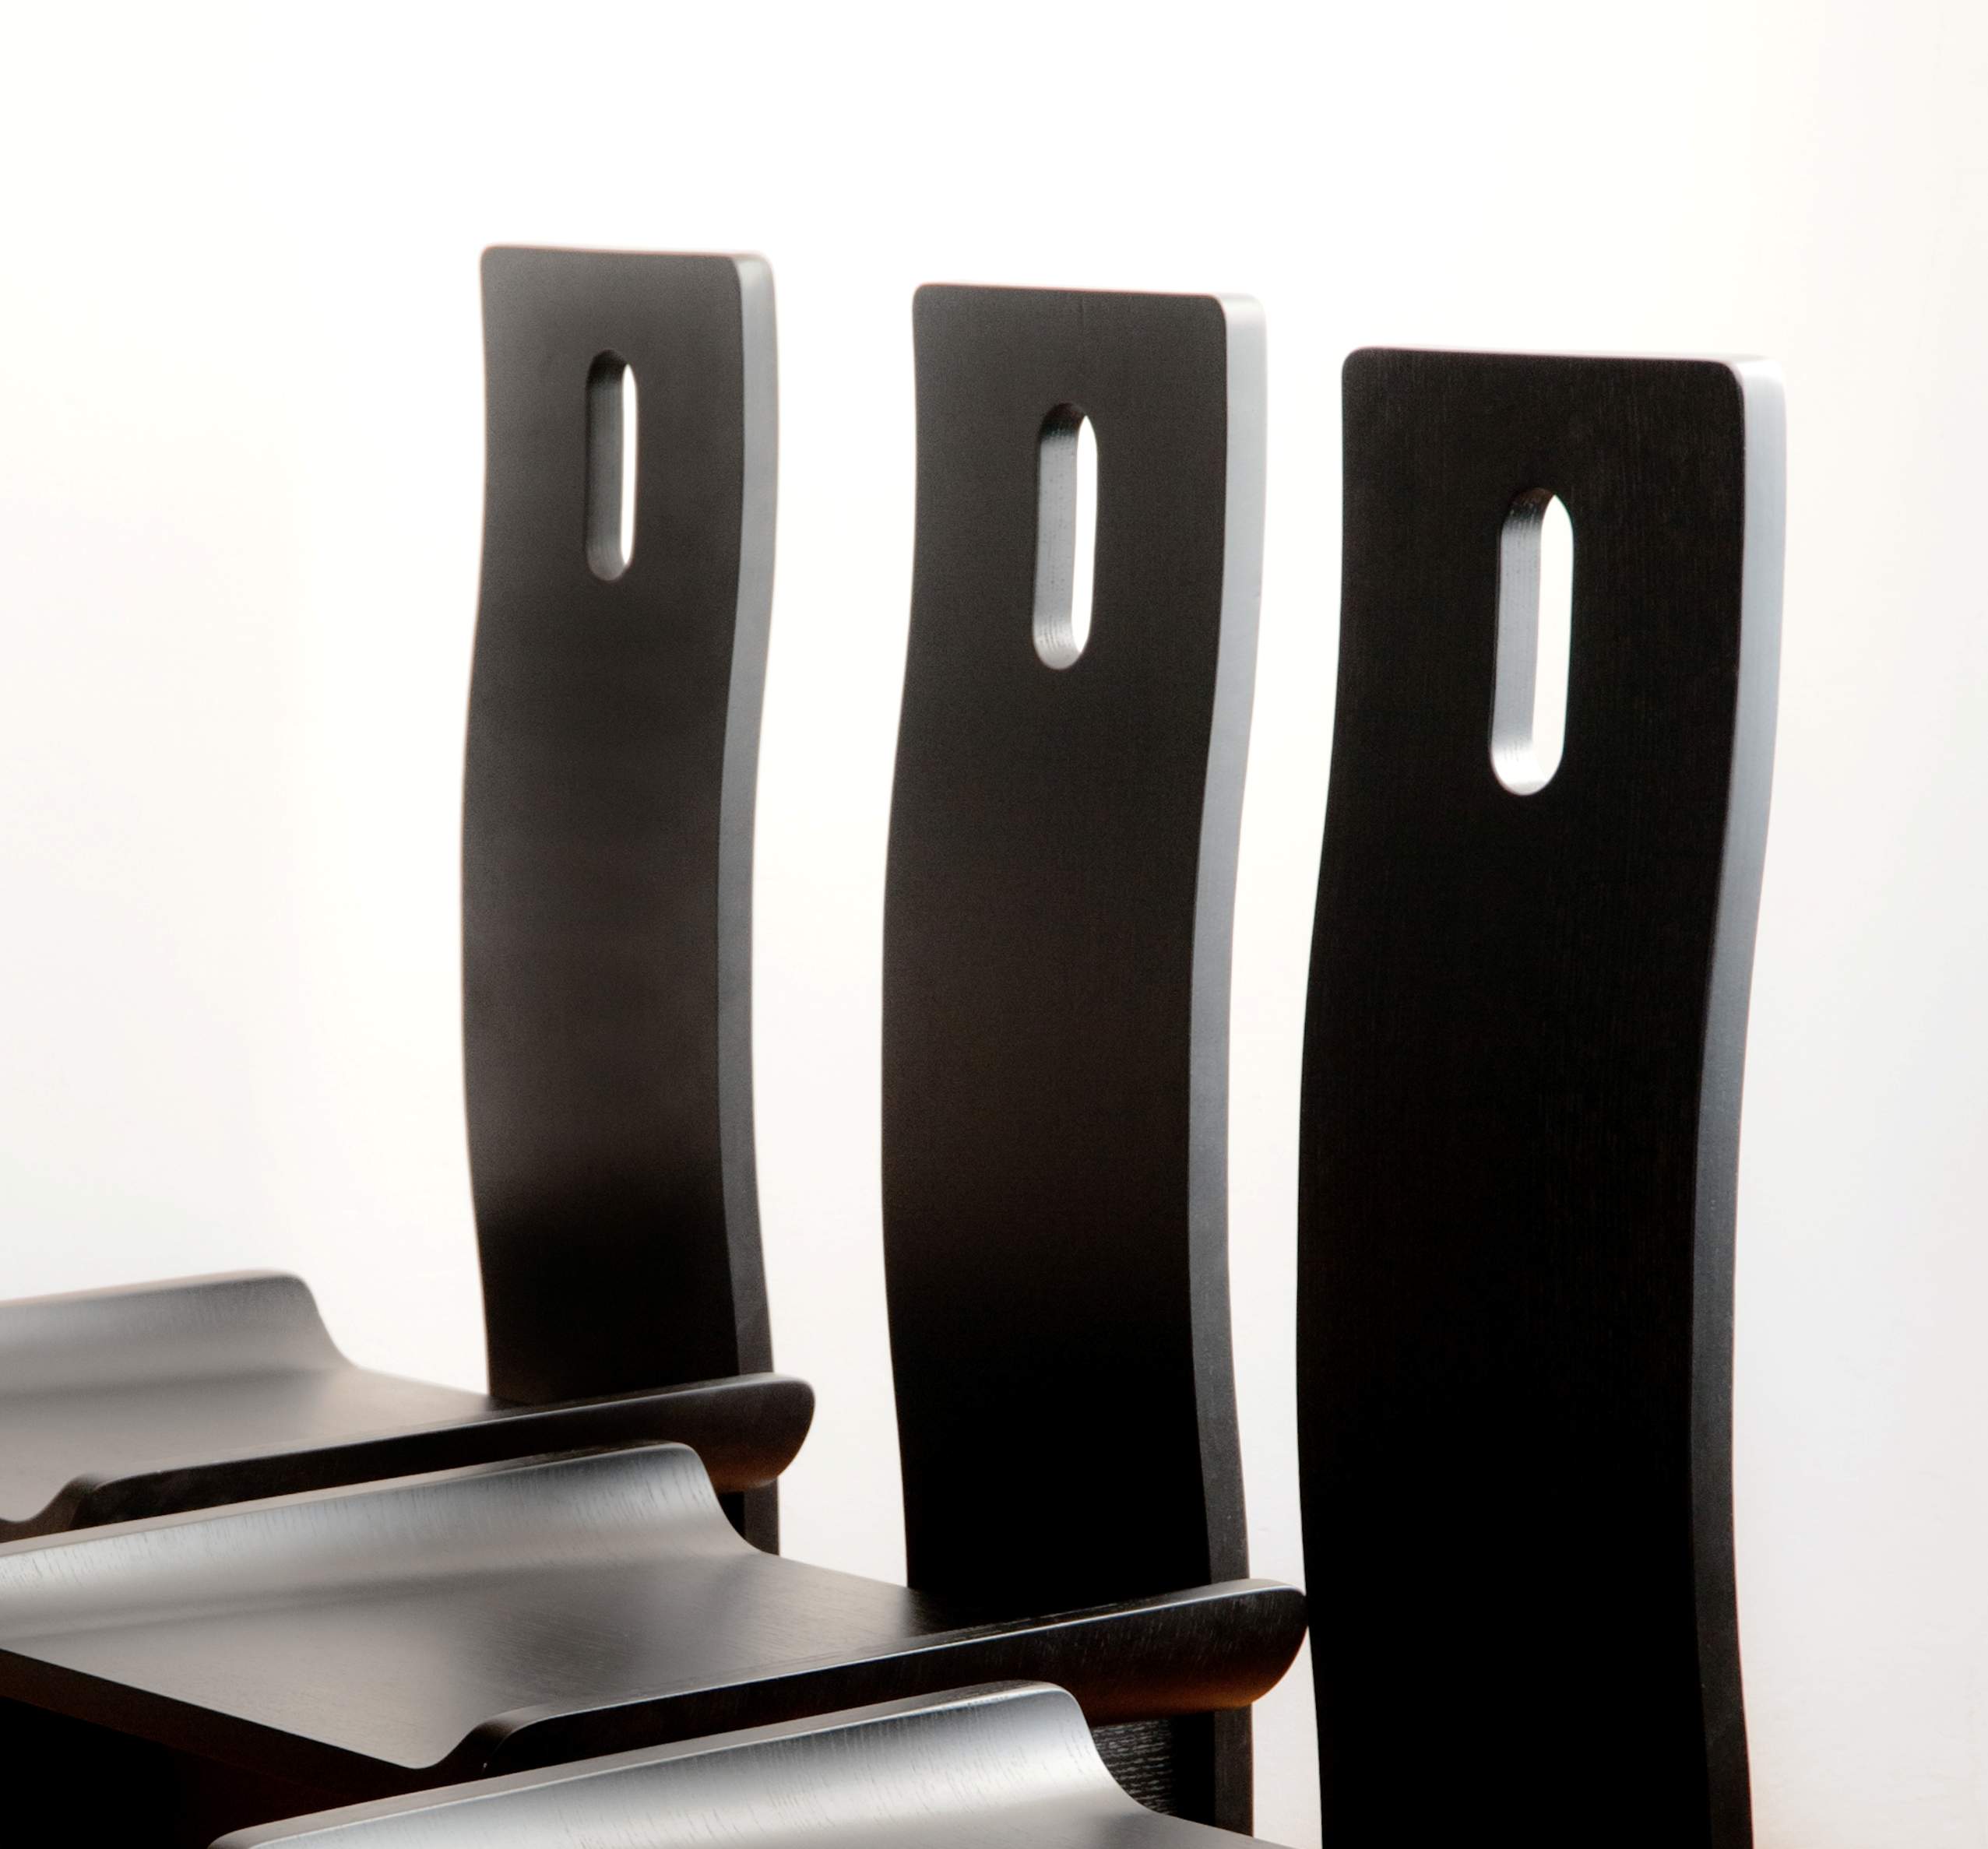 Sedia design Edoardo Landi - in legno curvato - laccata in vari colori - schienale alto ergonomico